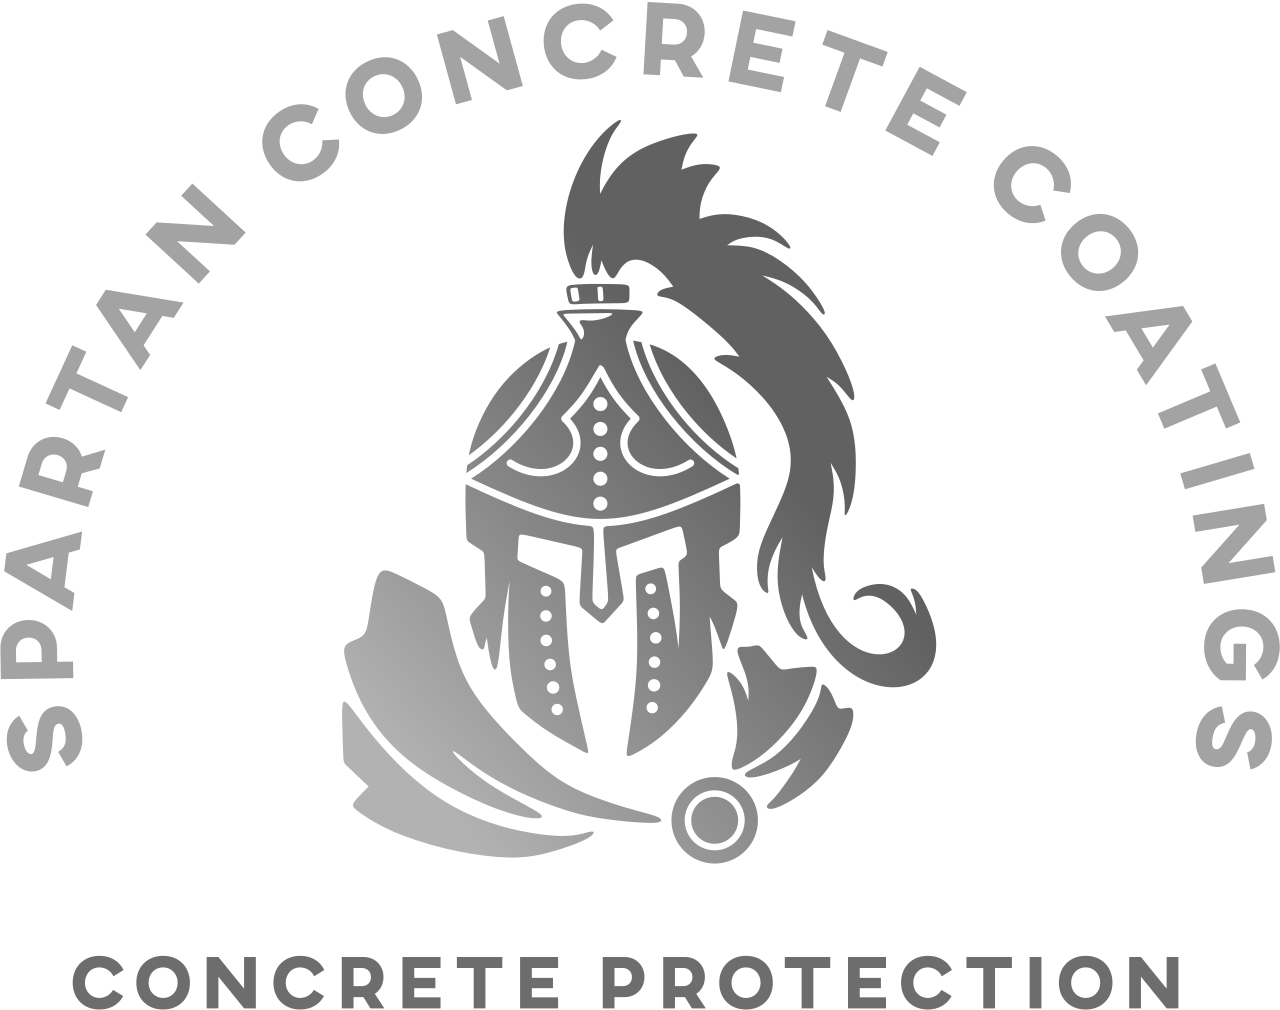 Spartan concrete coatings's web page